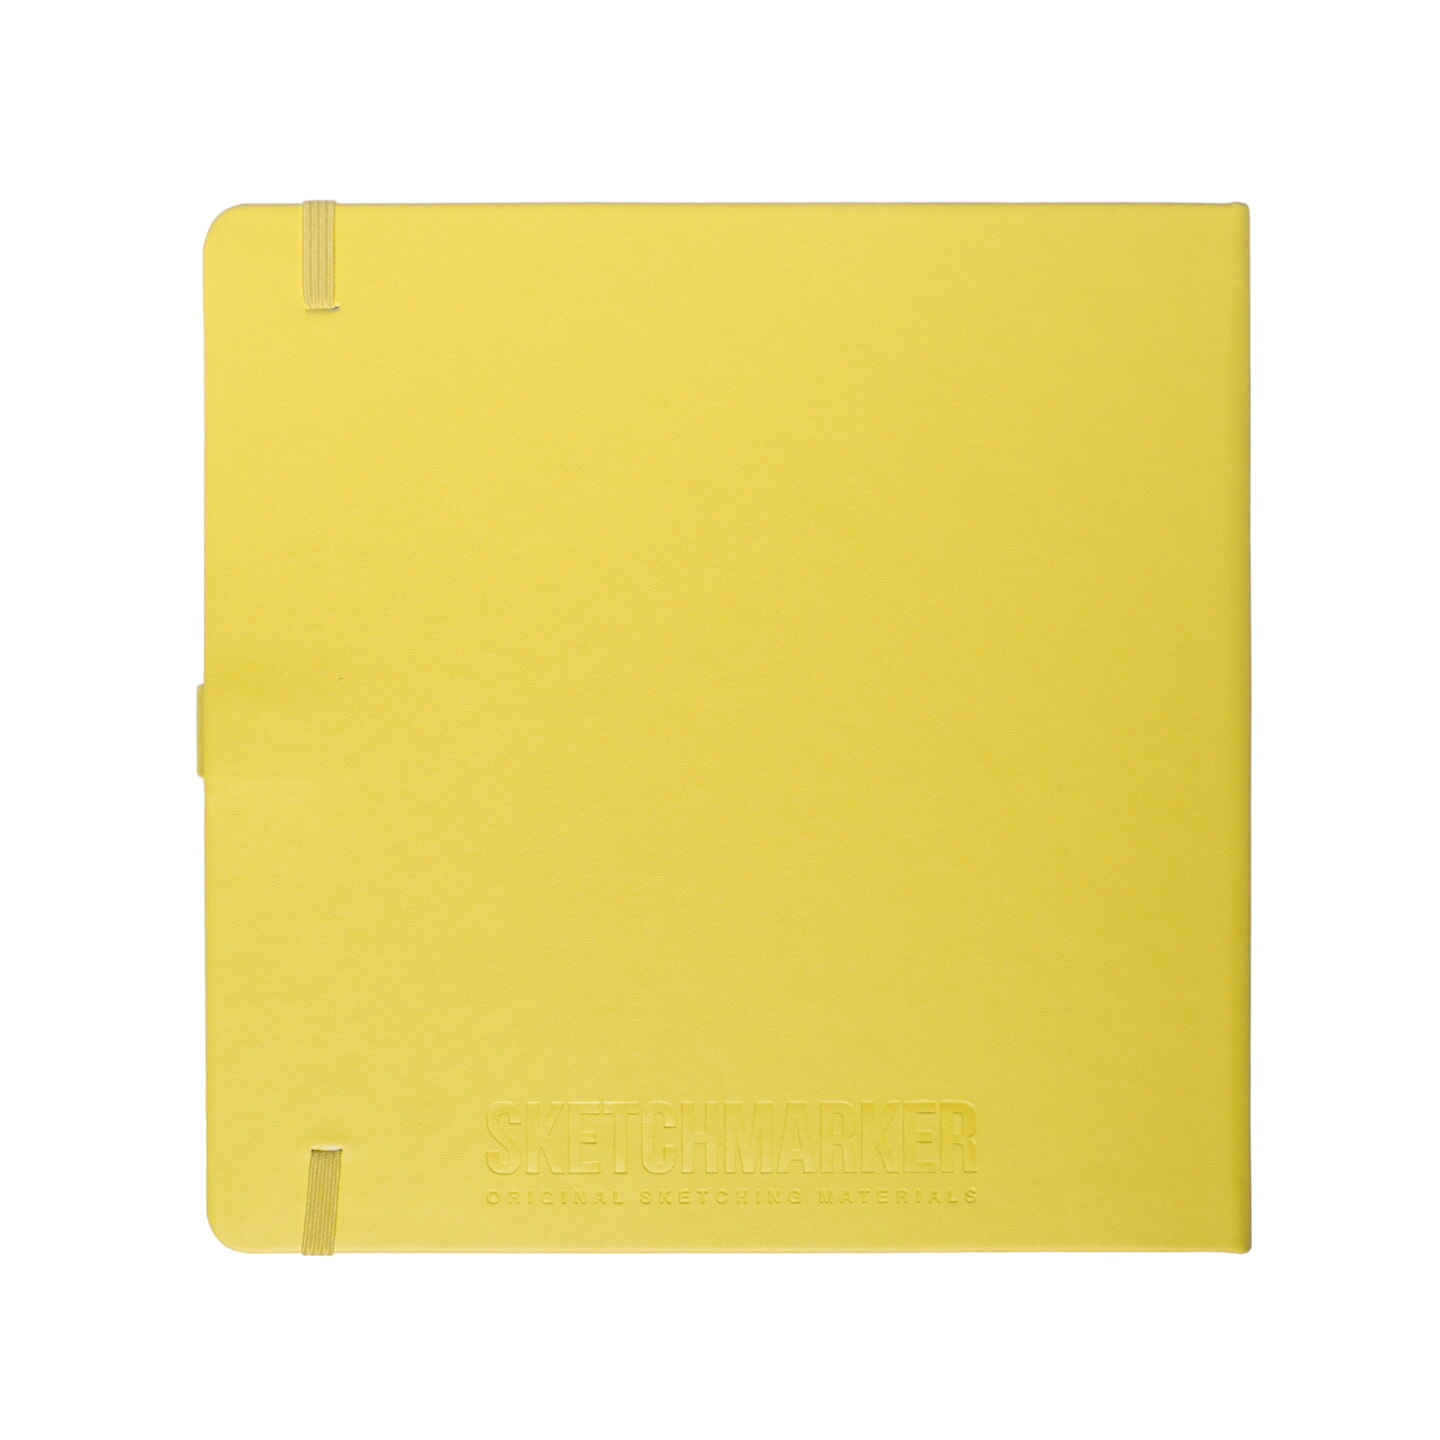 Блокнот для зарисовок Sketchmarker 140г/кв.м 20*20cм 80л твердая обложка Лимонный